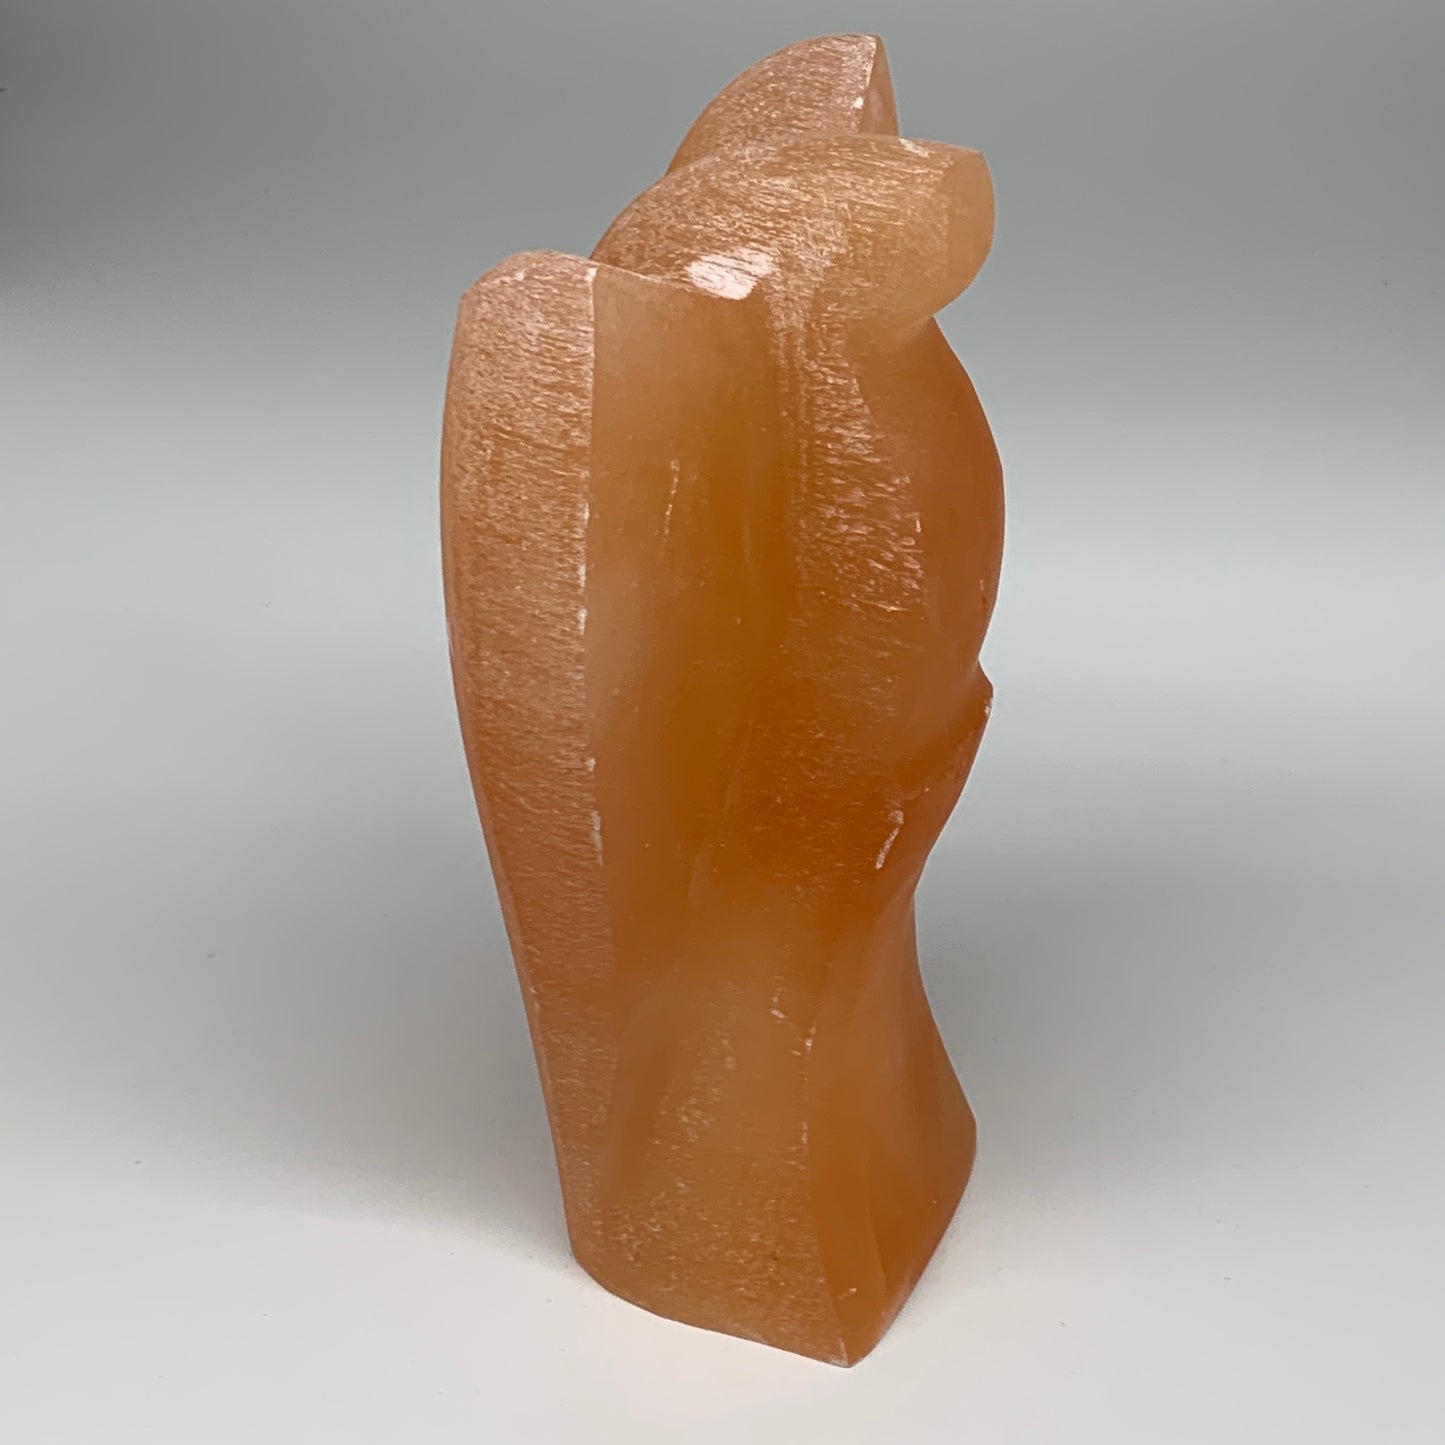 1858g, 8.25"x4.9"x2.8" Orange Selenite (Satin Spar) Angel Lamps @Morocco,B9448